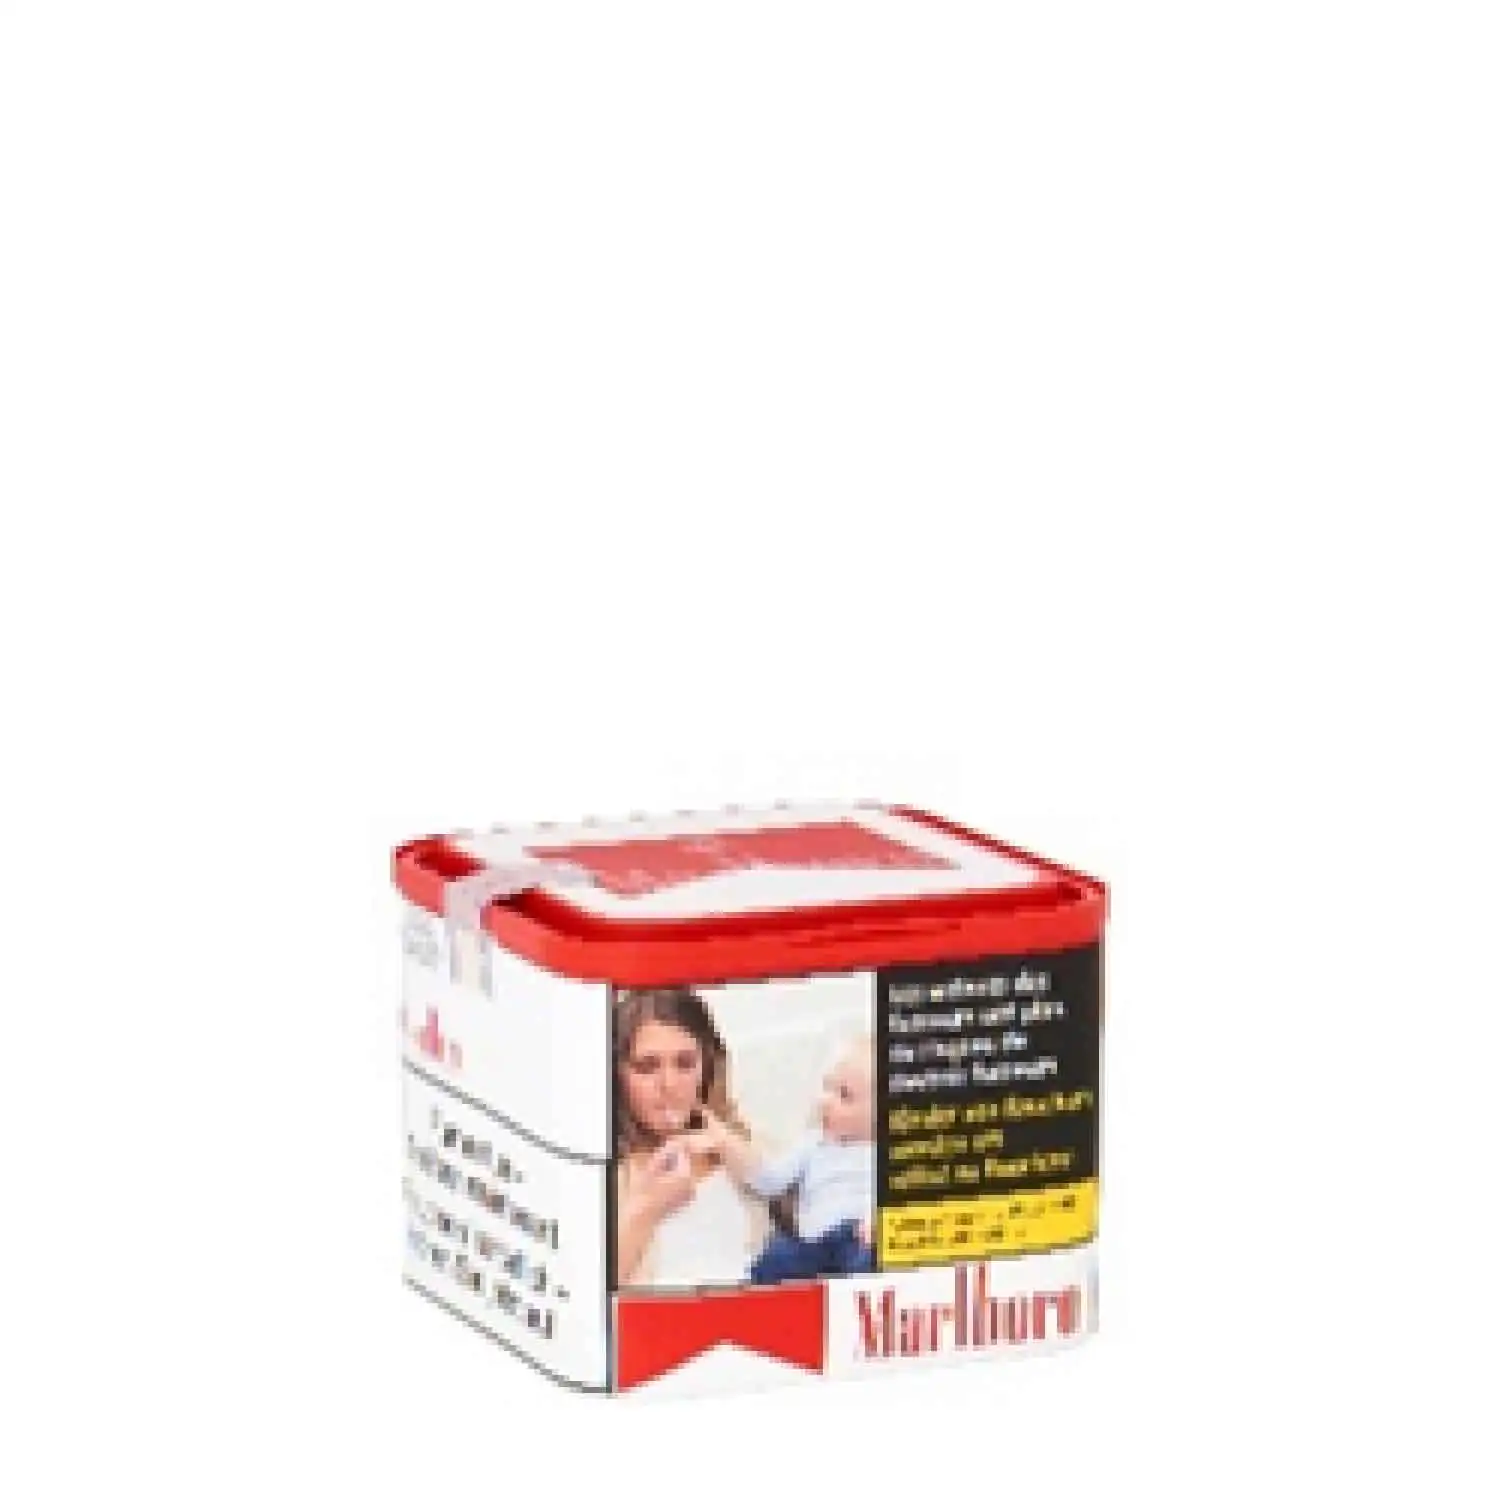 Marlboro red 45g - Buy at Real Tobacco